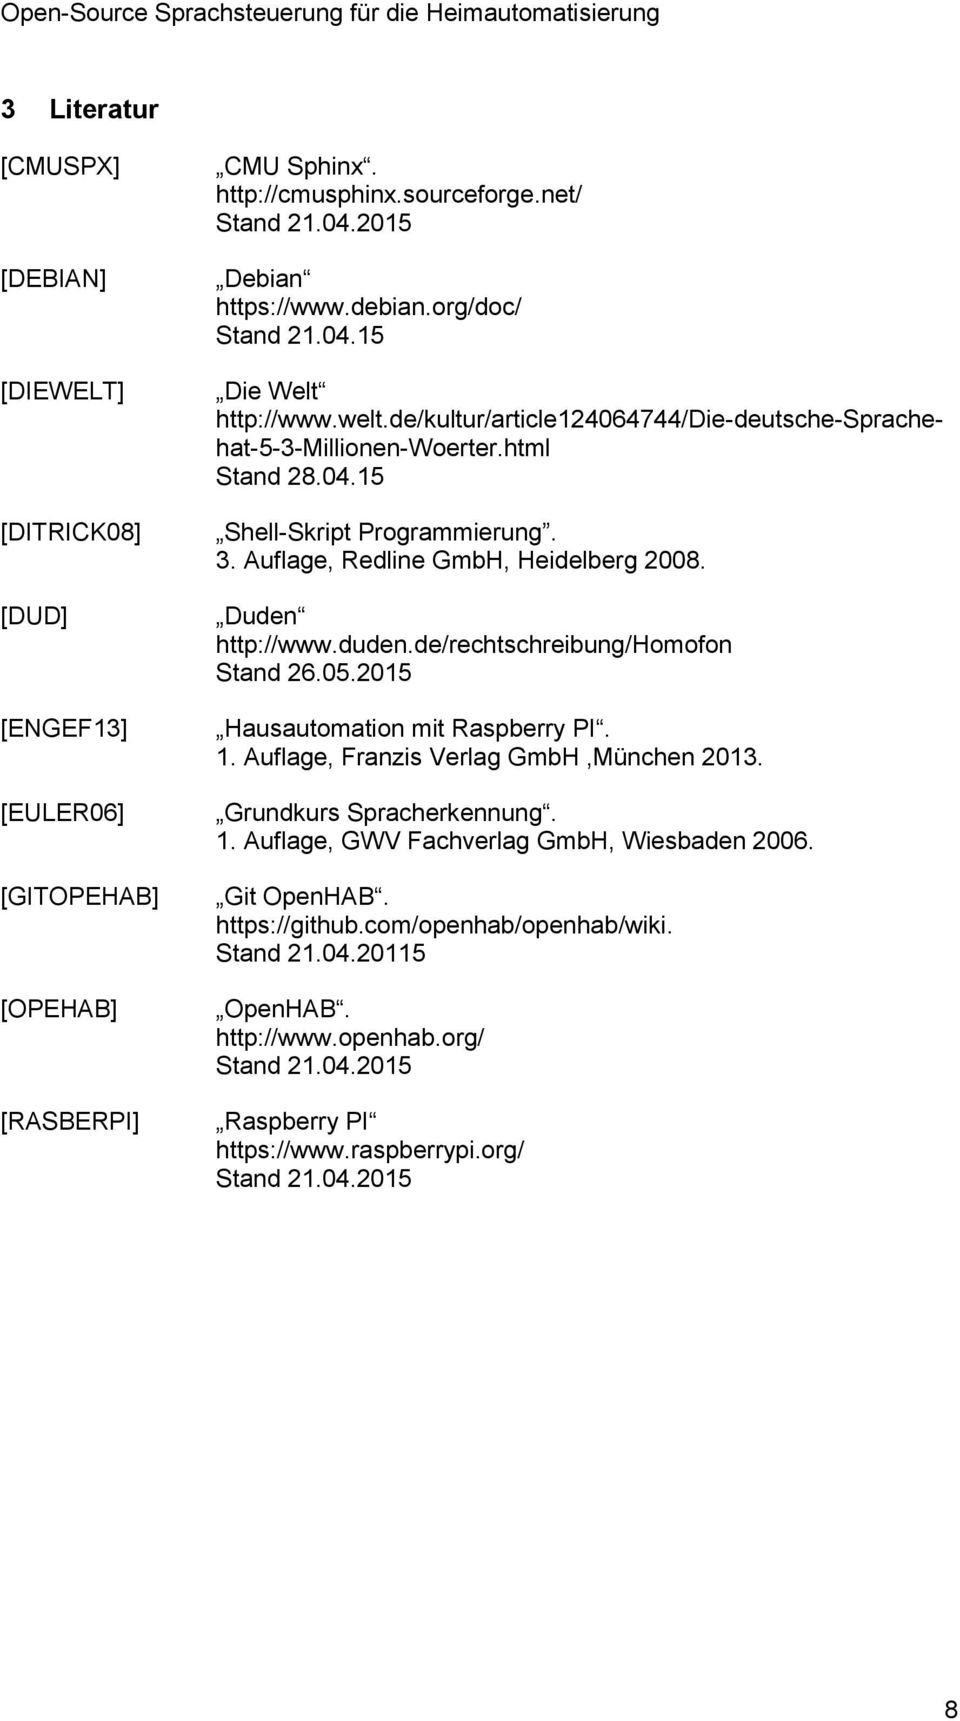 Auflage, Redline GmbH, Heidelberg 2008. Duden http://www.duden.de/rechtschreibung/homofon Stand 26.05.2015 Hausautomation mit Raspberry PI. 1. Auflage, Franzis Verlag GmbH,München 2013.